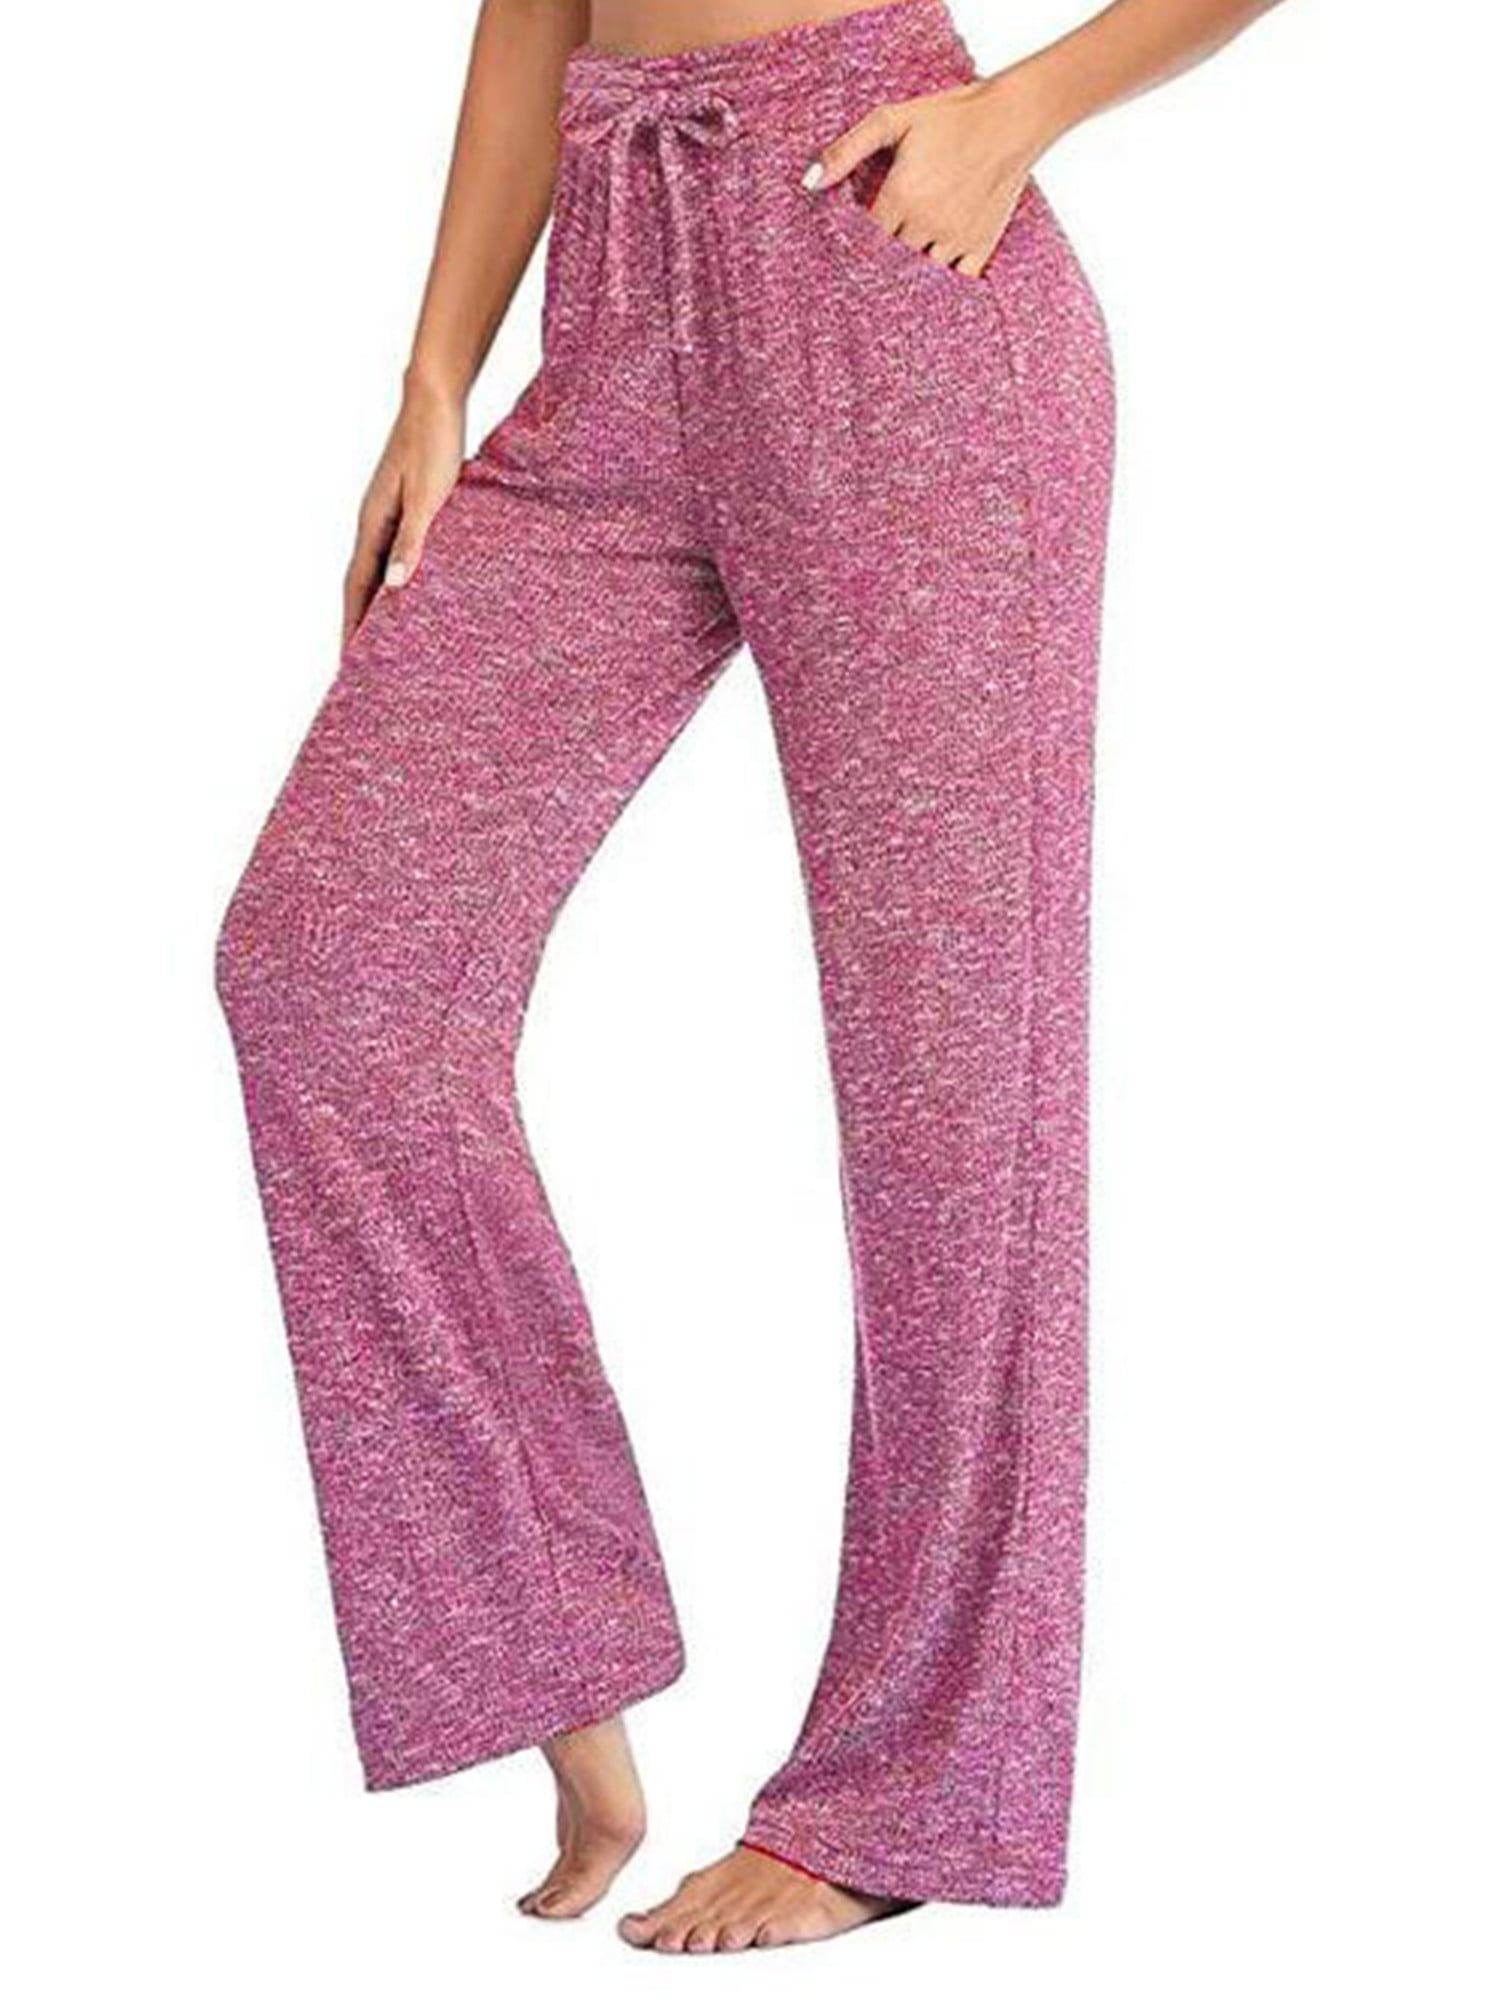 Women's Casual Long Pajama Lounge Pants Drawstring Sleepwear Regular & Plus Size